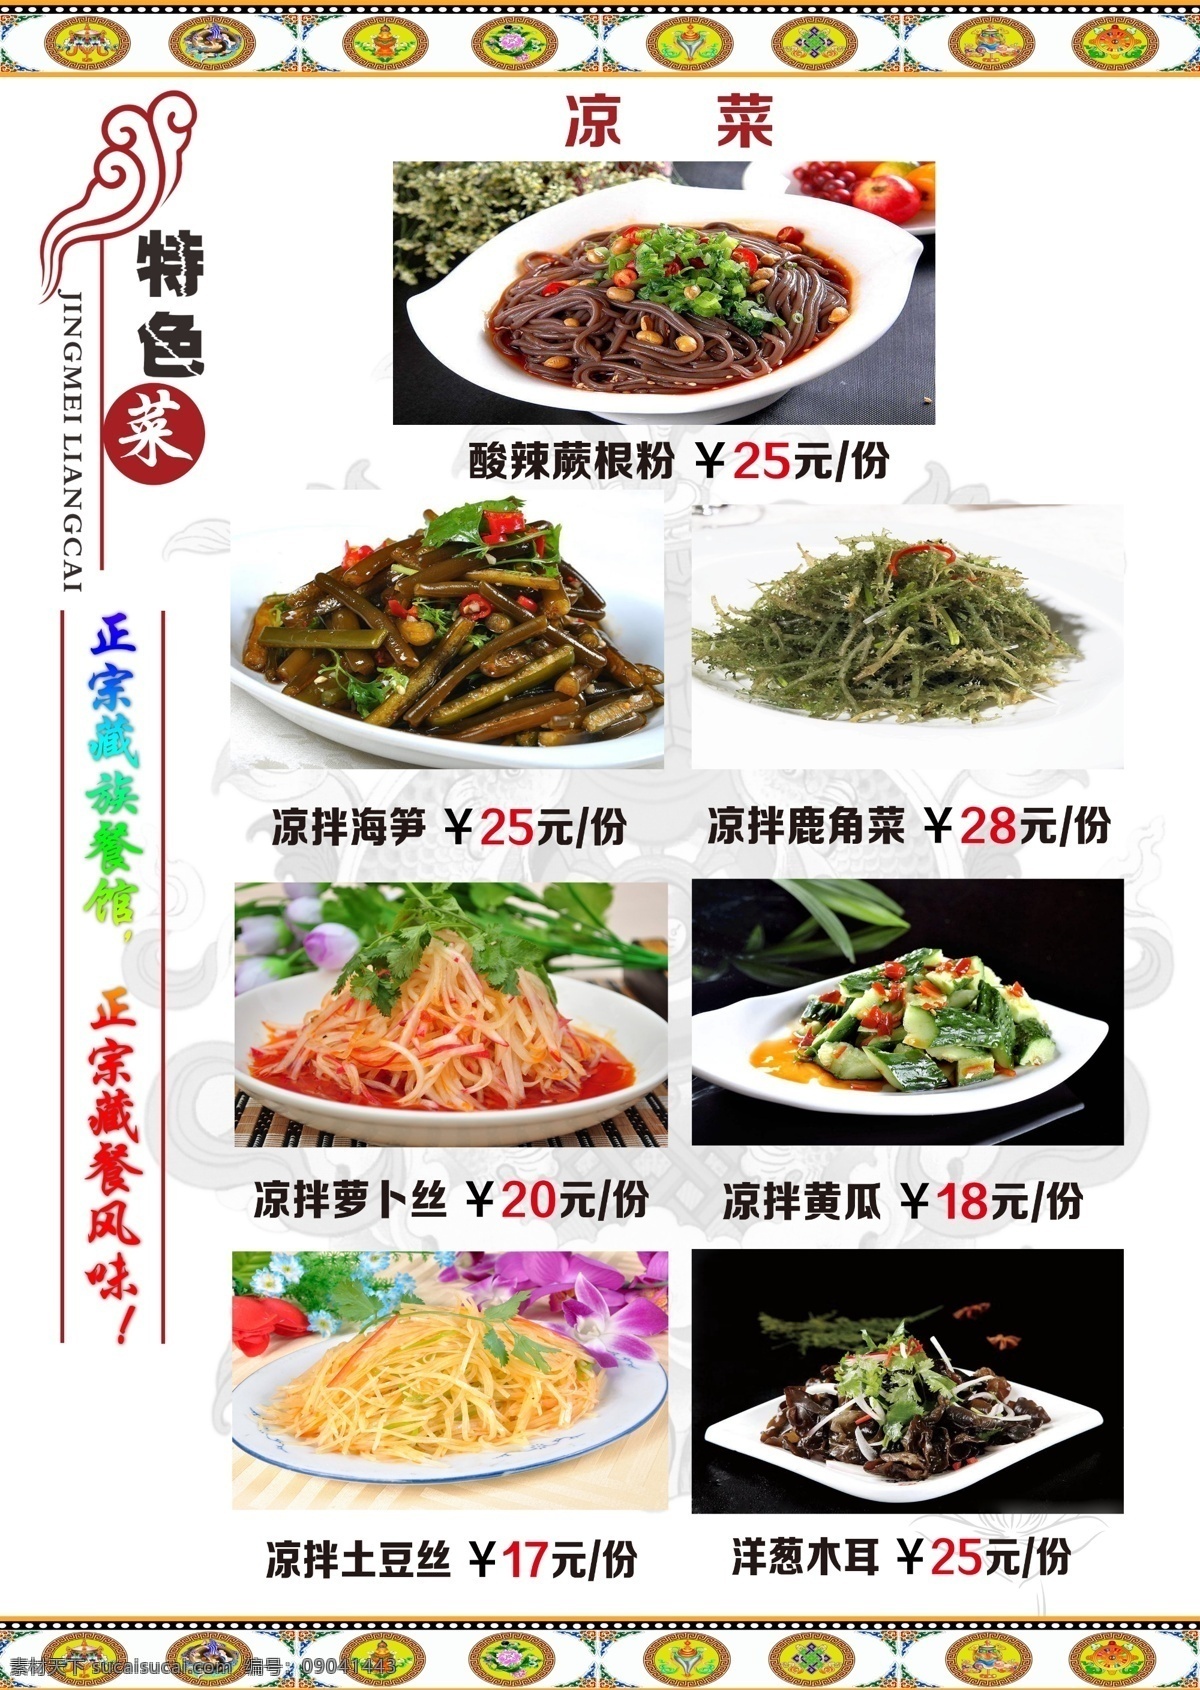 藏式菜单 藏式菜谱 菜单 菜谱 藏餐 藏族美食